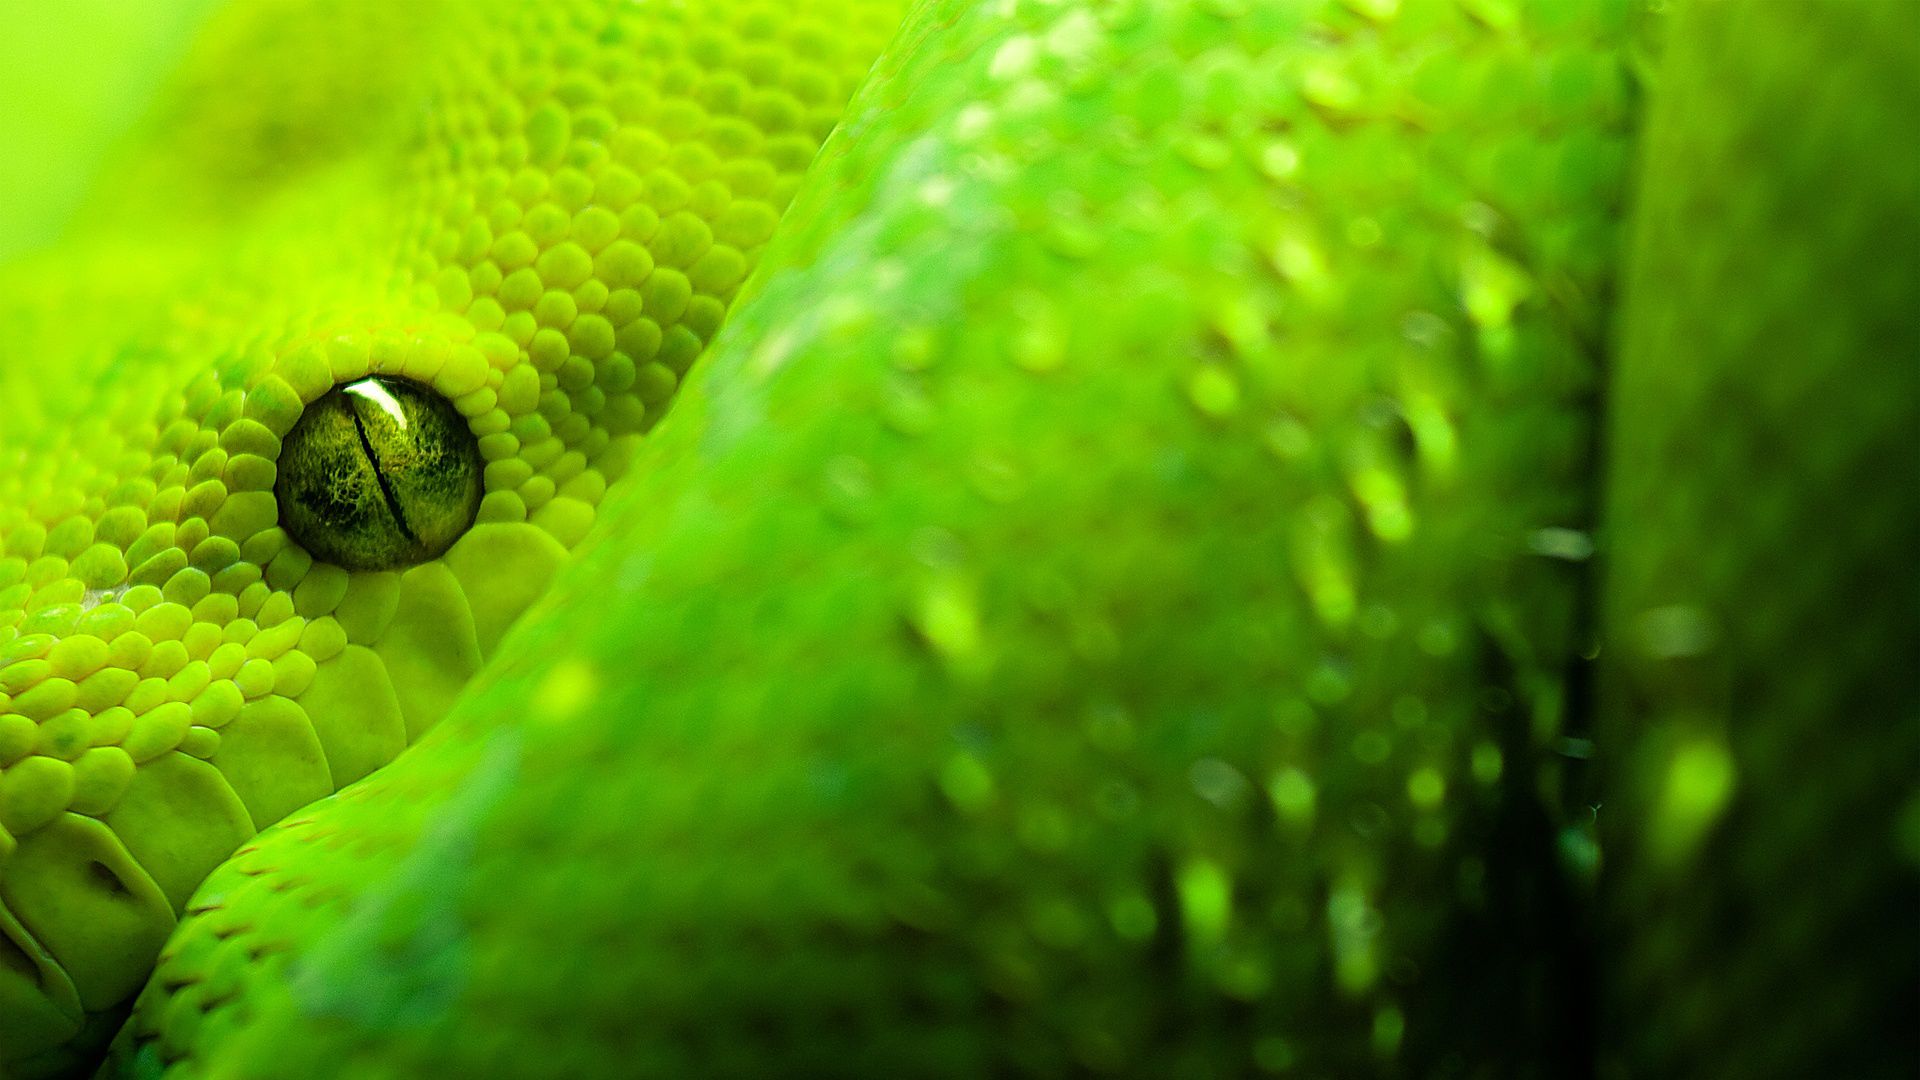 Desktop Gaboon Viper Snake Wallpaper - HD Wallpaper 